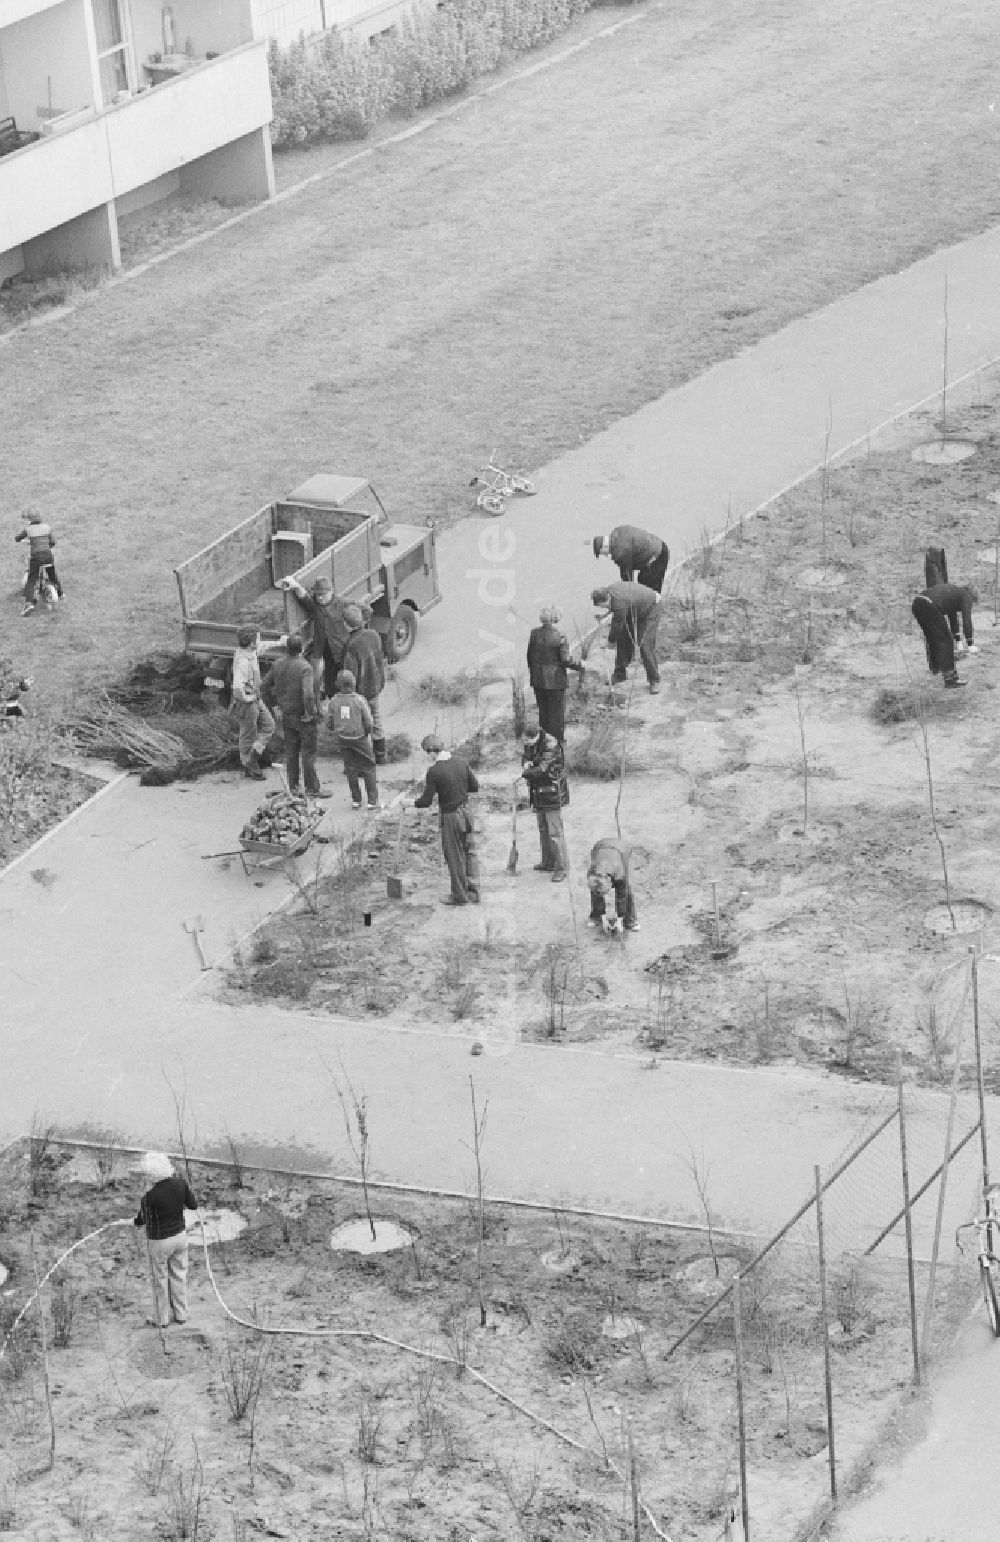 Berlin: Subbotnik, freiwilliger Arbeitseinsatz im Innenhof in einem Neubaugebiet in Berlin, der ehemaligen Hauptstadt der DDR, Deutsche Demokratische Republik